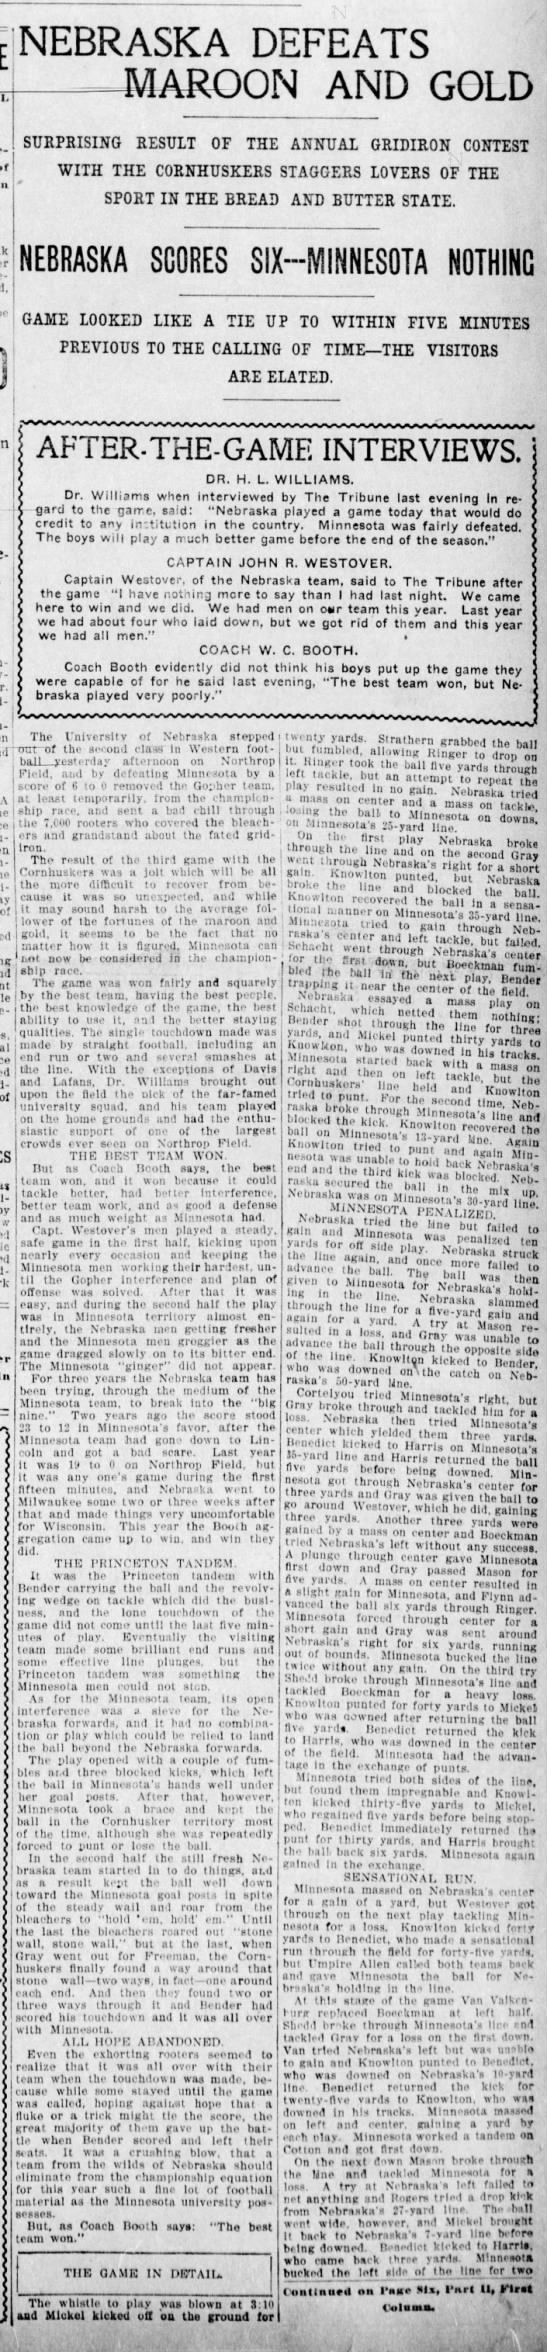 1902 Nebraska-Minnesota, Tribune part 1 - 